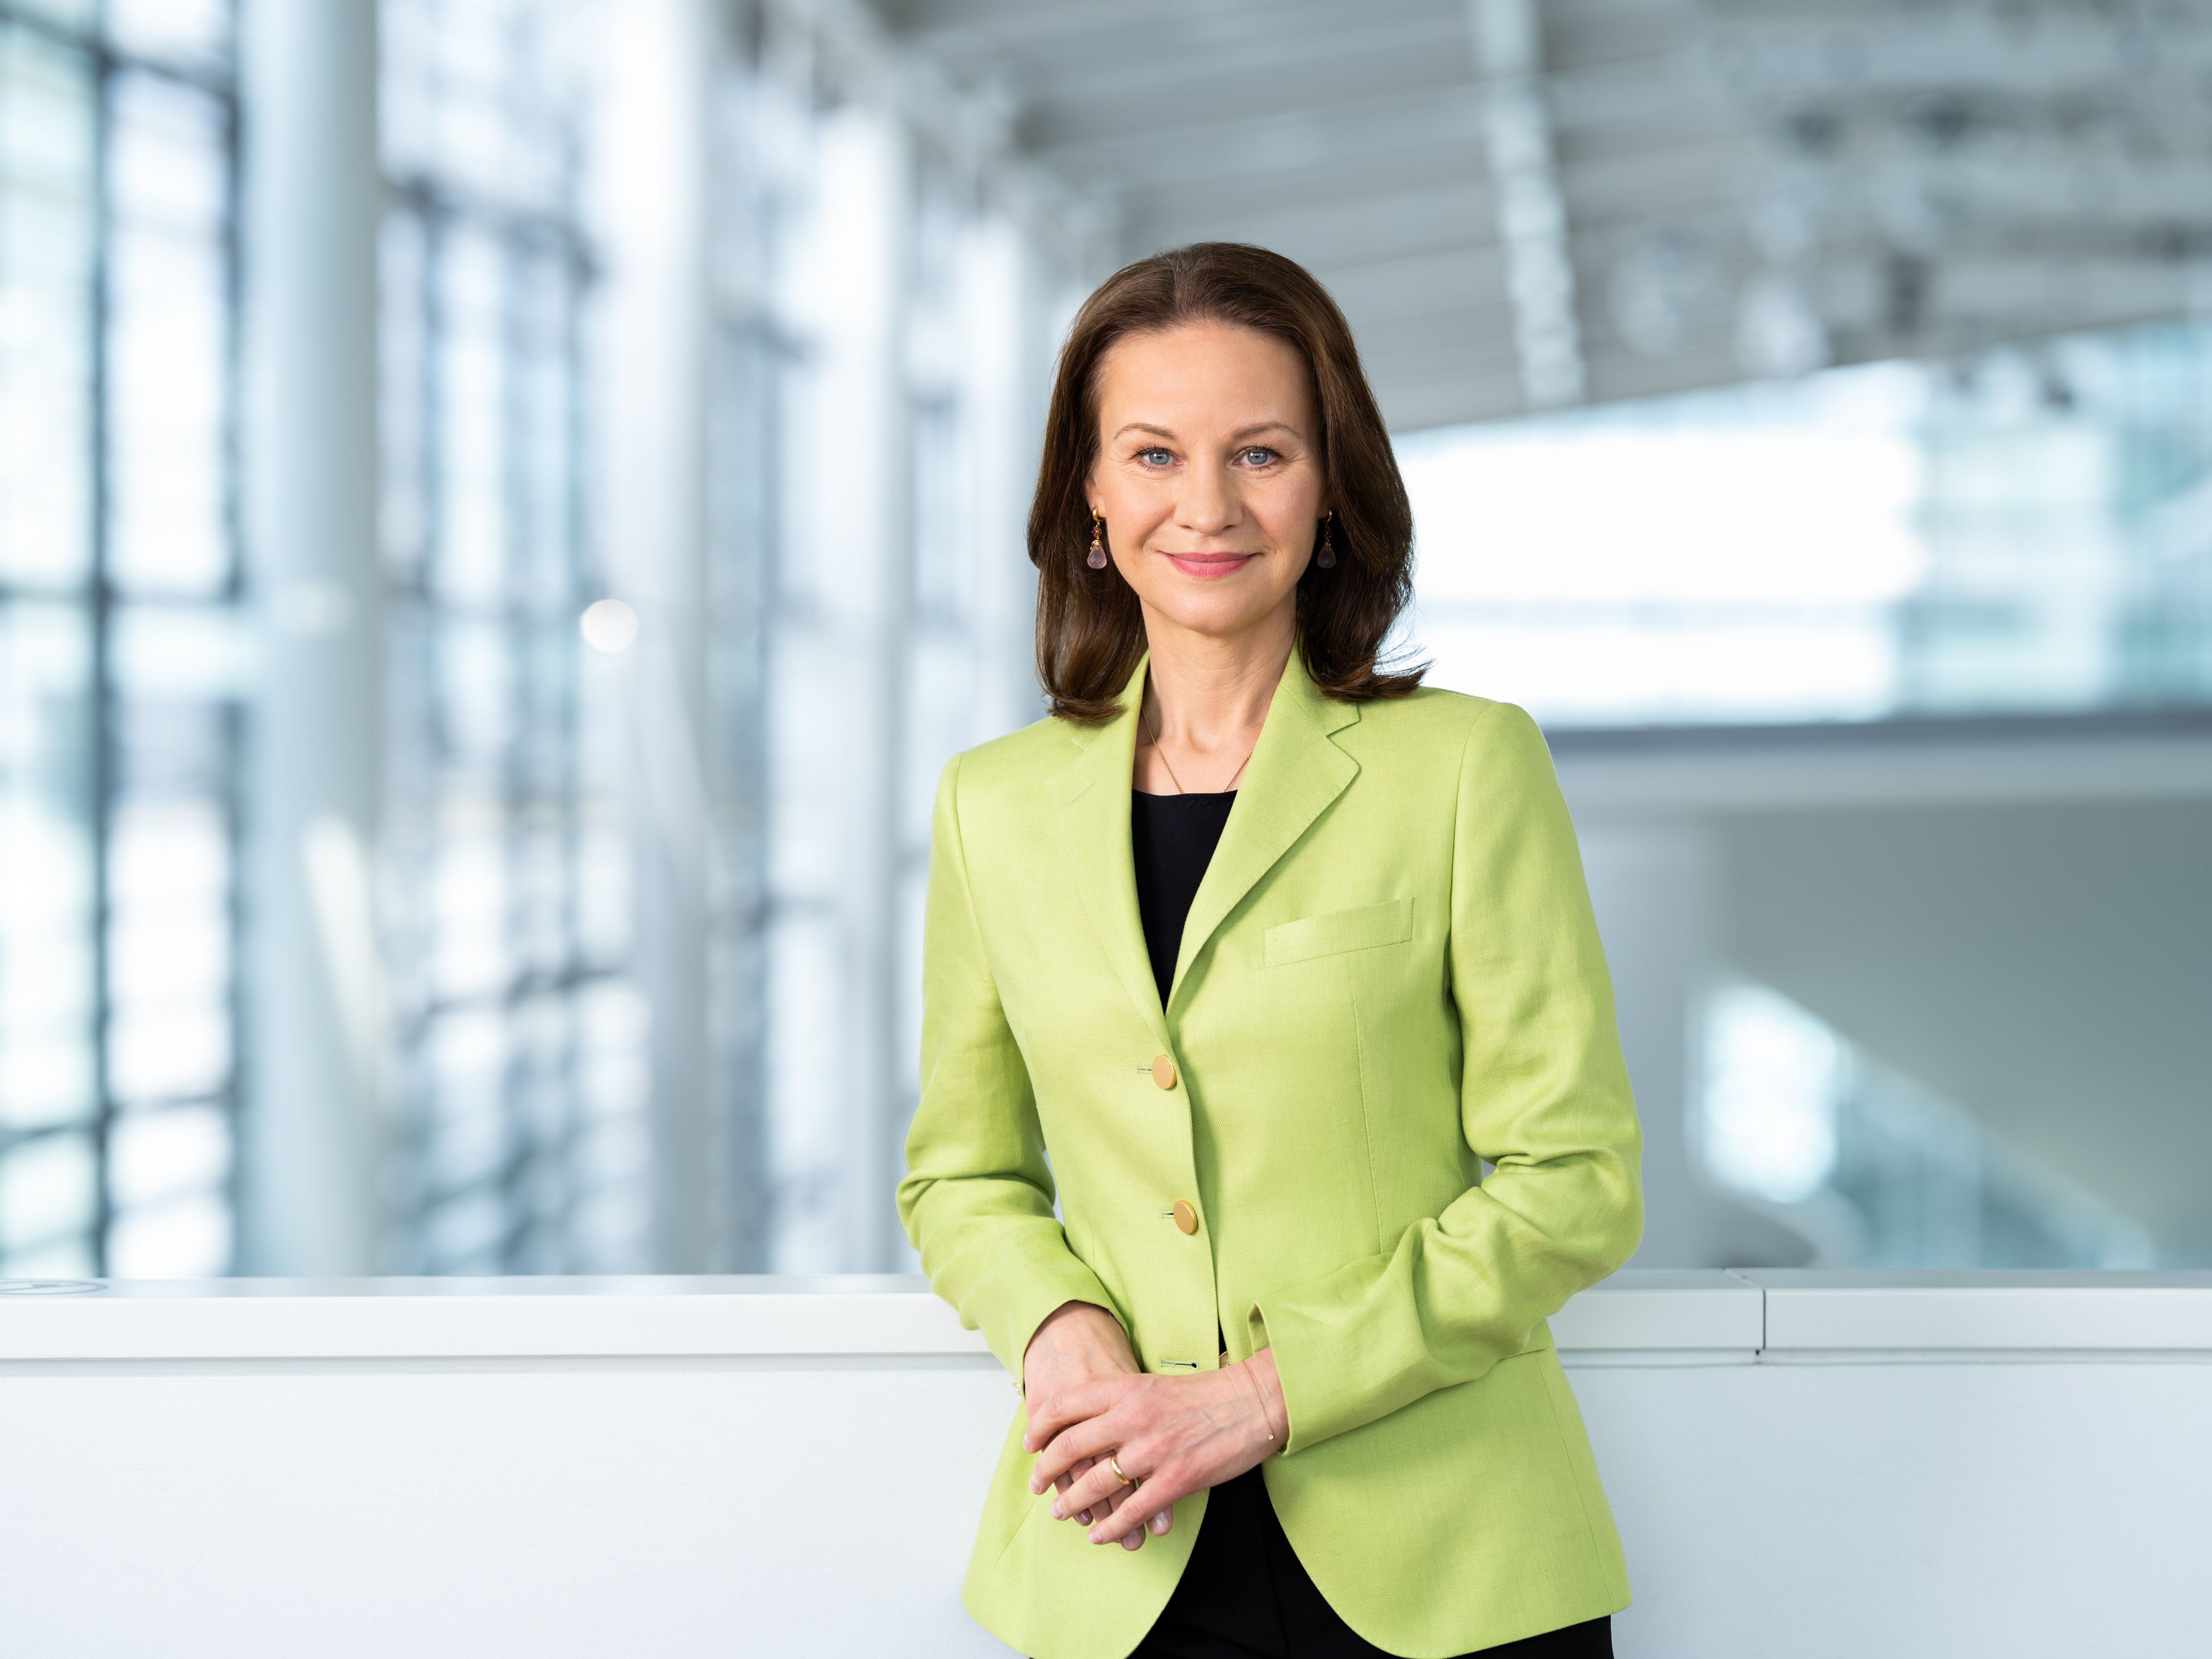 Bild 3: Patricia Neumann, Vorstandsvorsitzende der Siemens AG Österreich © Siemens